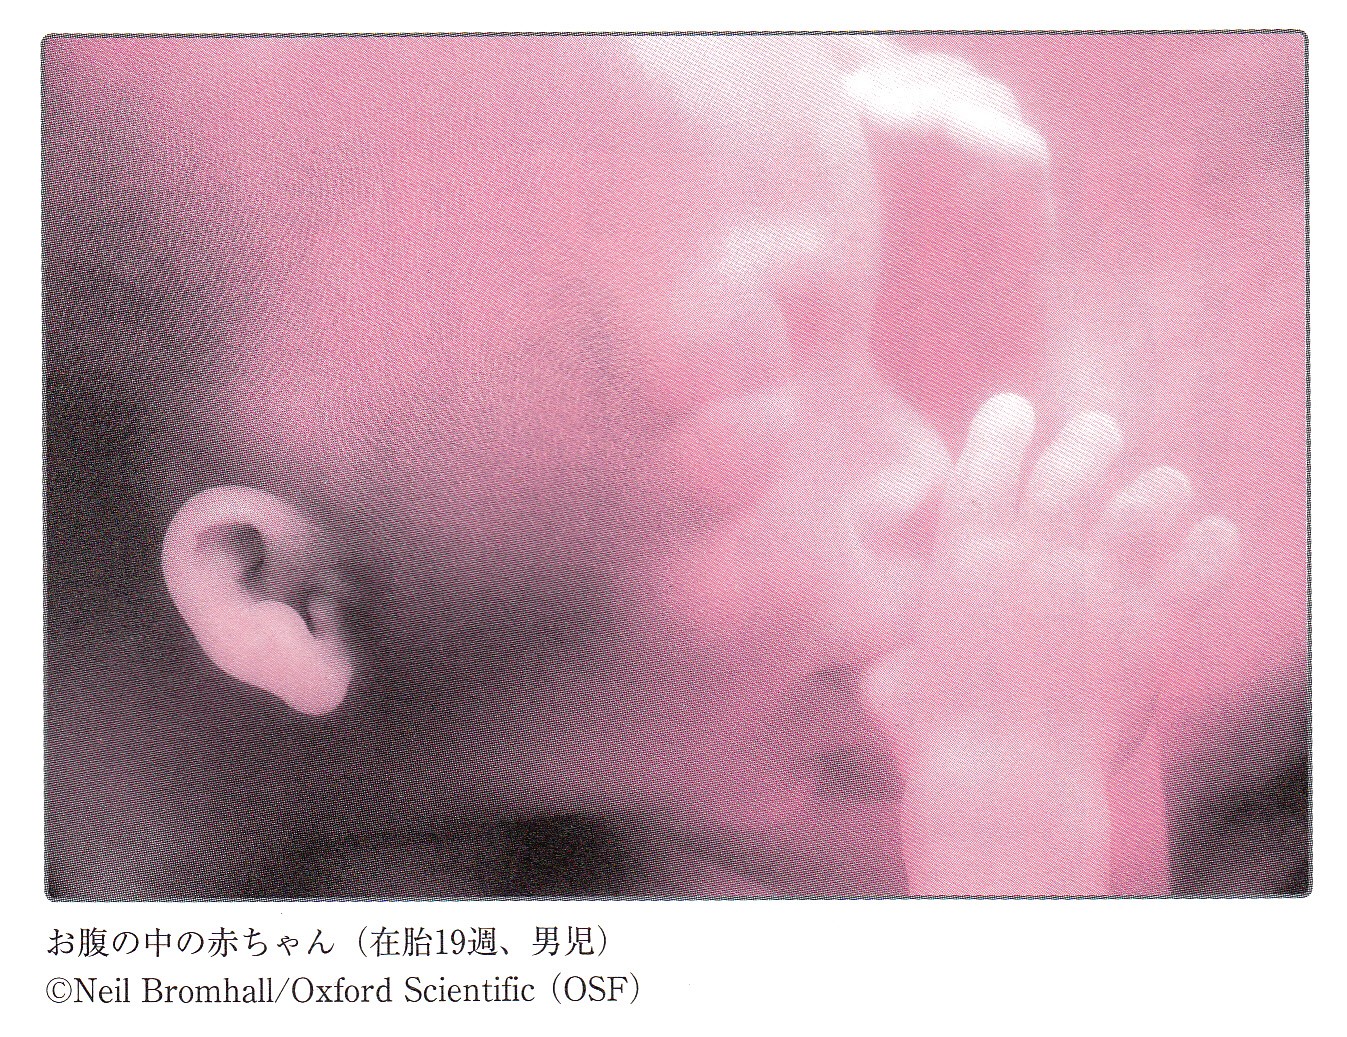 お腹の中の 赤ちゃんの様子 茗荷谷 小石川の歯医者 文京歯科